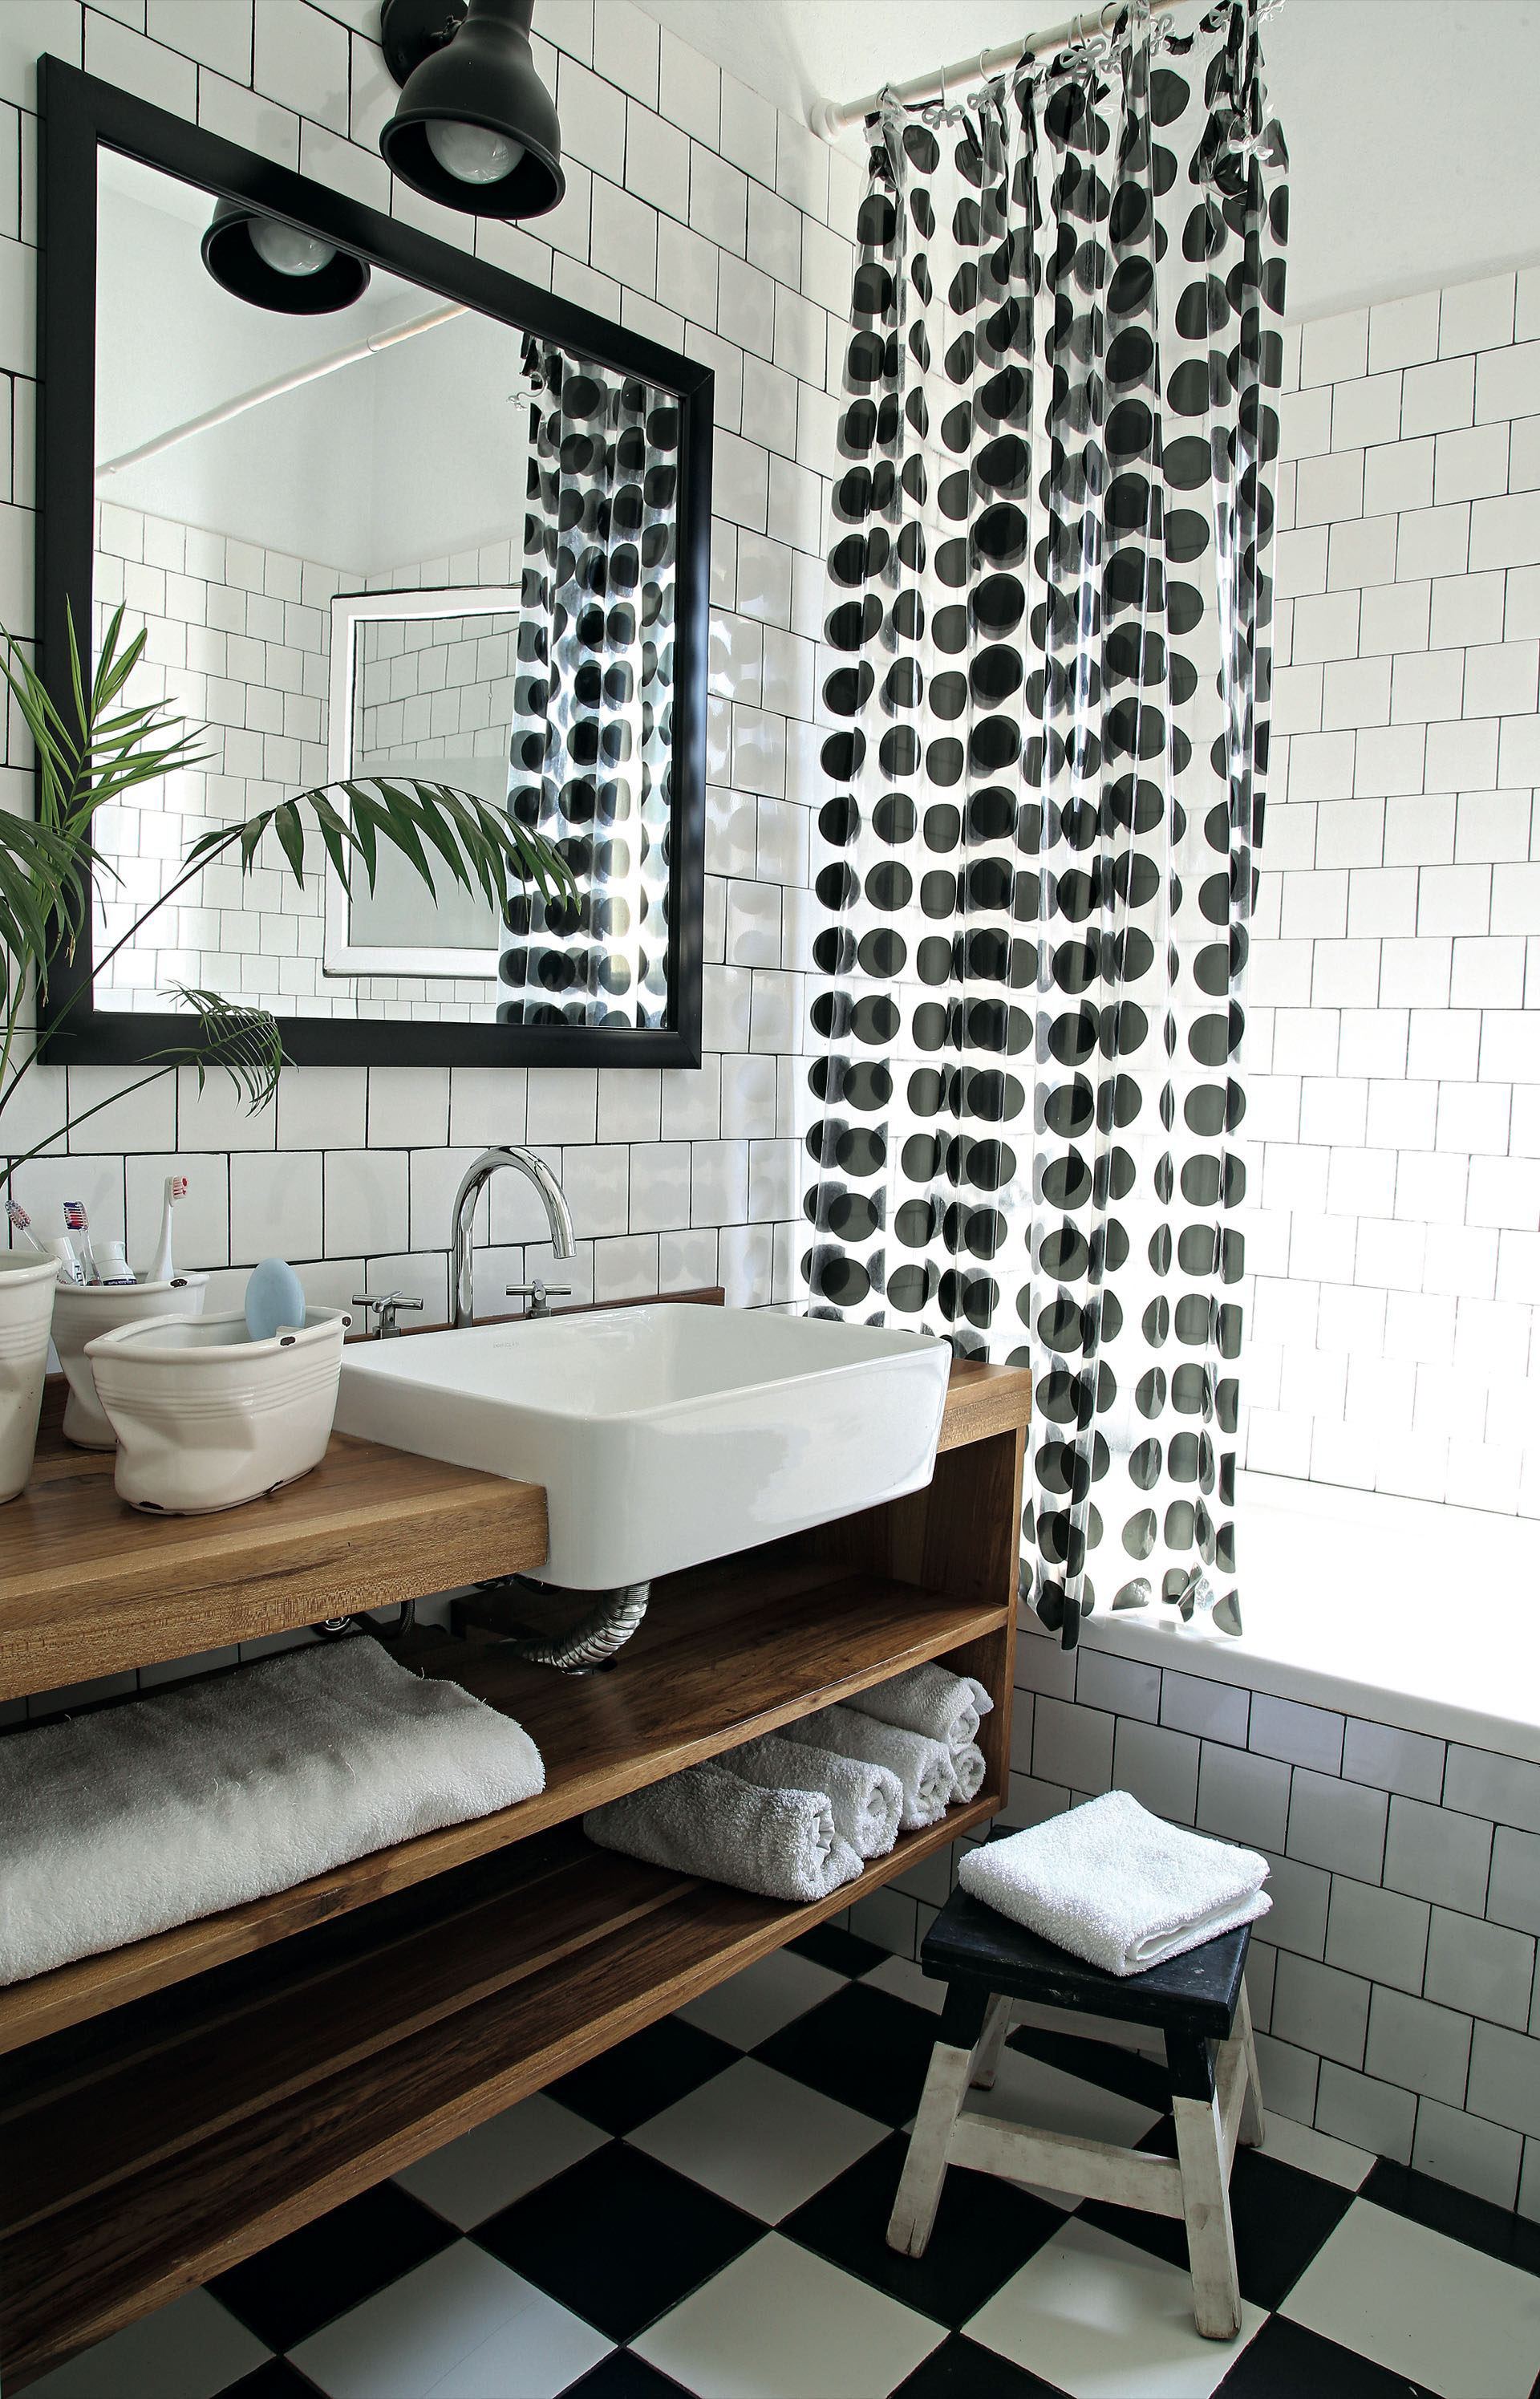 Monocromo absoluto para el baño. El blanco y negro del piso de damero se replica en los azulejos con junta a contratono y en la cortina.